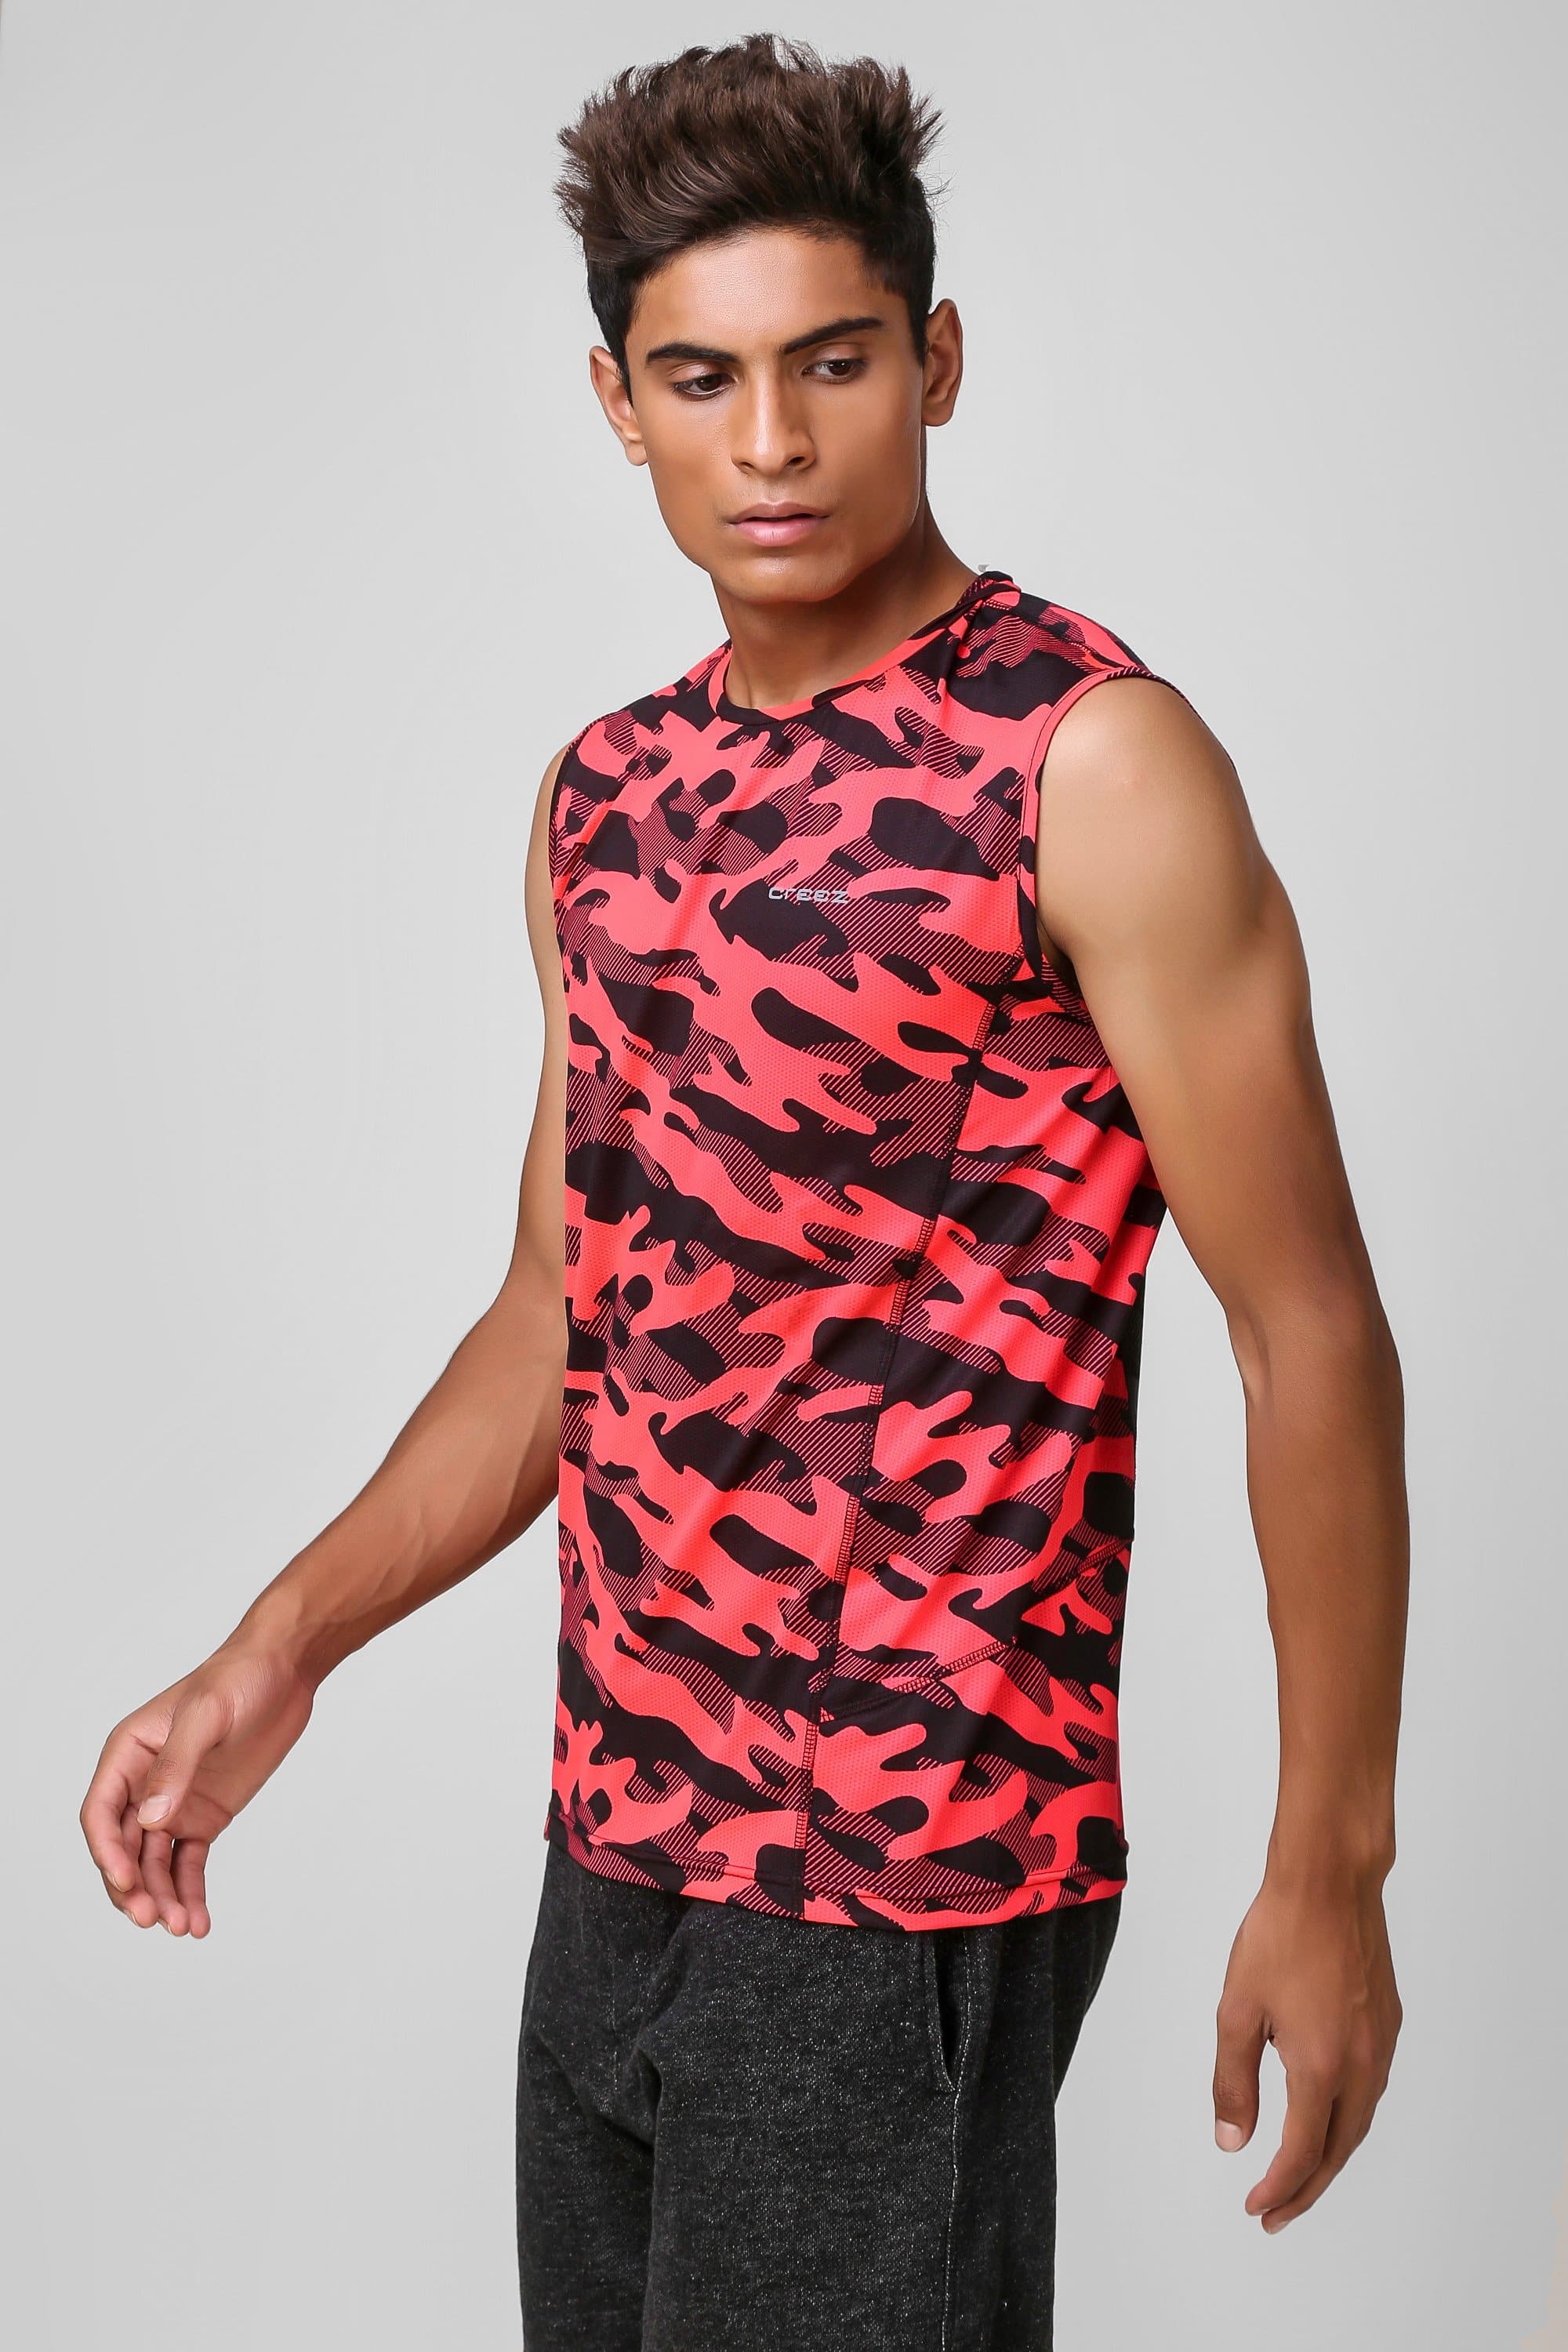 Camo Print Stretchable Sleeveless Tshirt 5